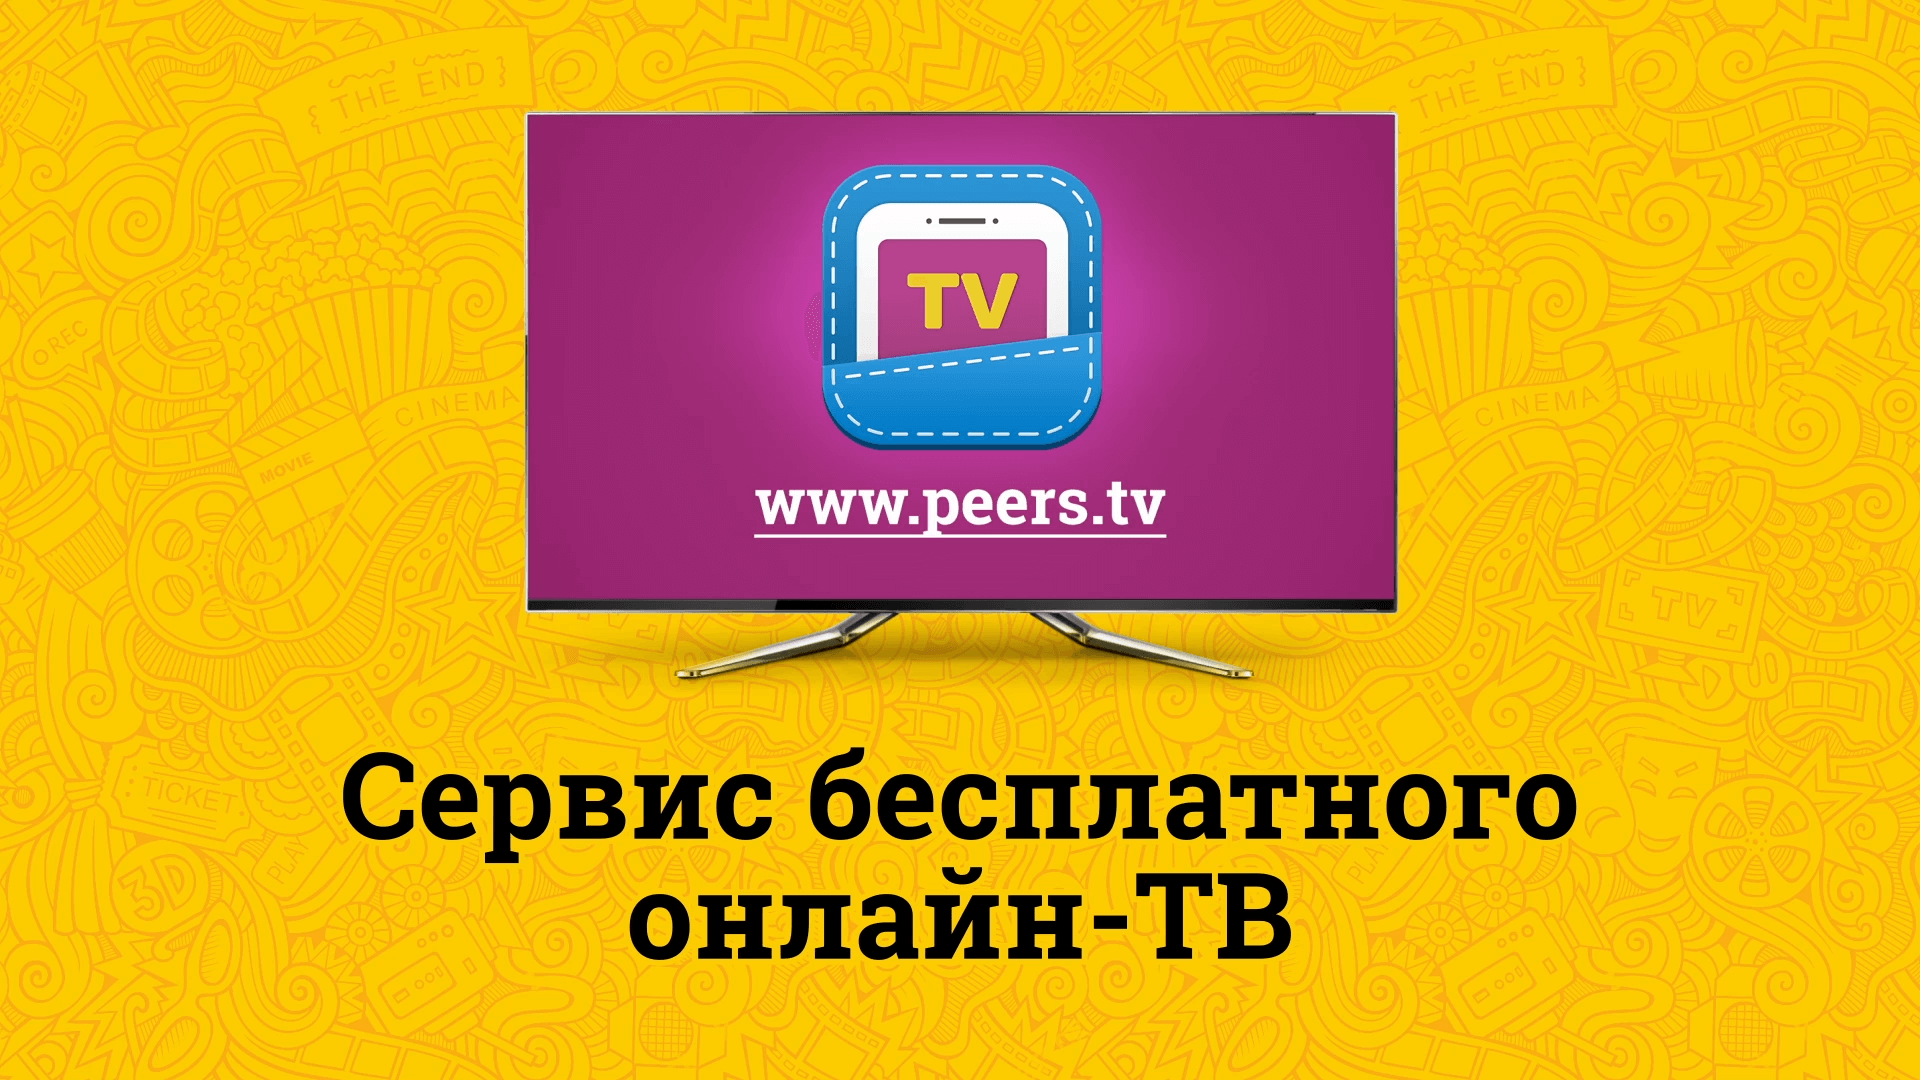 Новый бесплатный телевизор. Peers TV. Peers TV логотип. Перс ТВ. Пирс ТВ каналы.